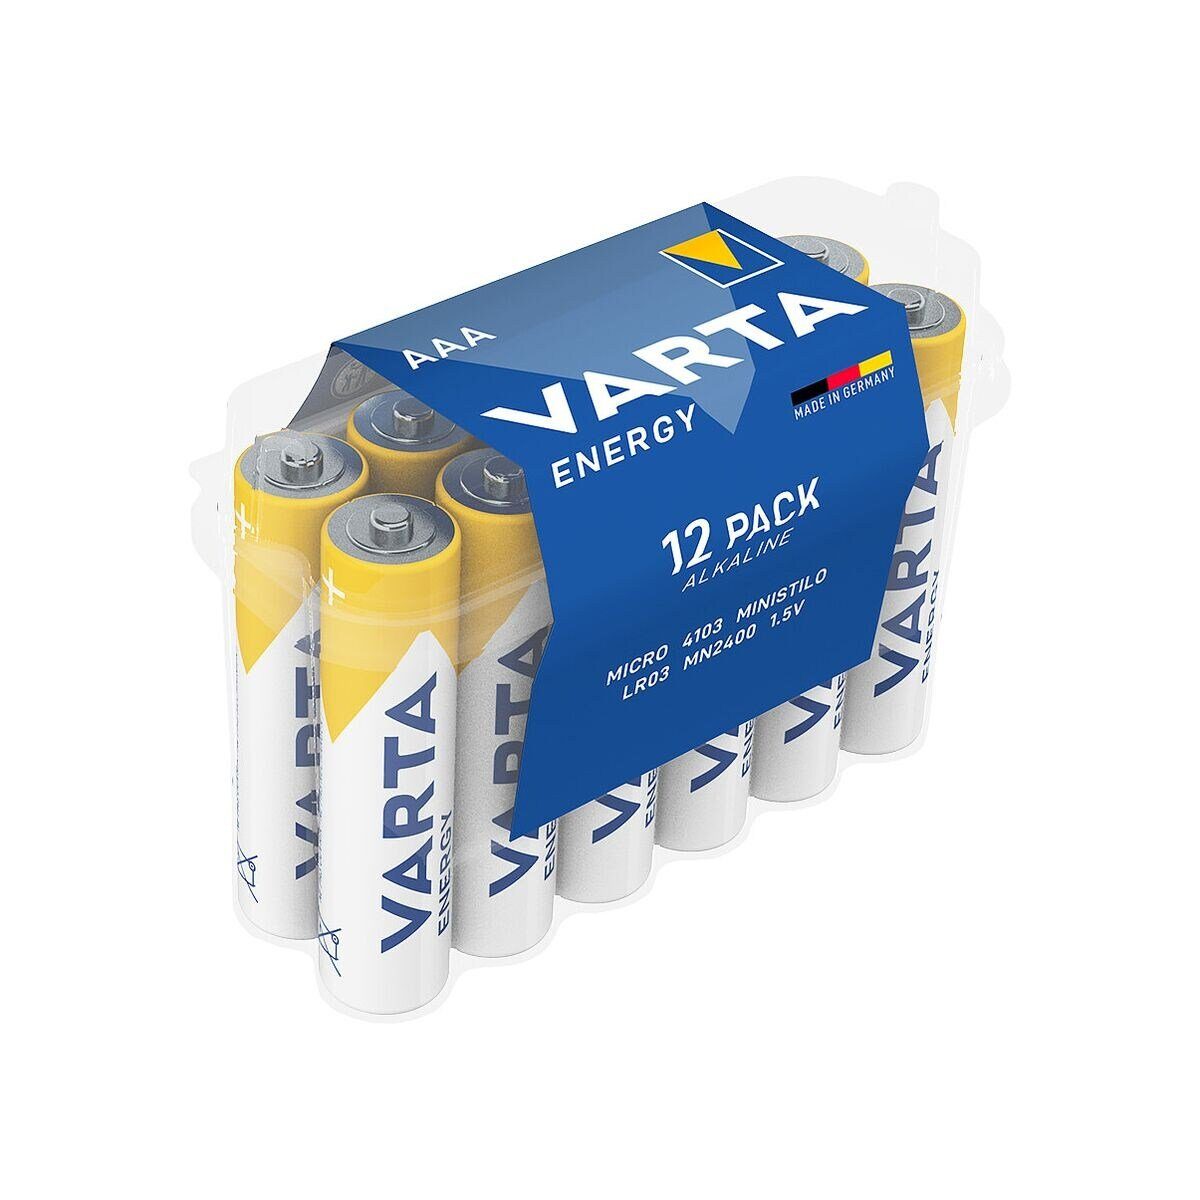 VARTA Energy Batterie, (1.5 V, 12 St), Micro / AAA / LR03, 1,5 V, Alkali